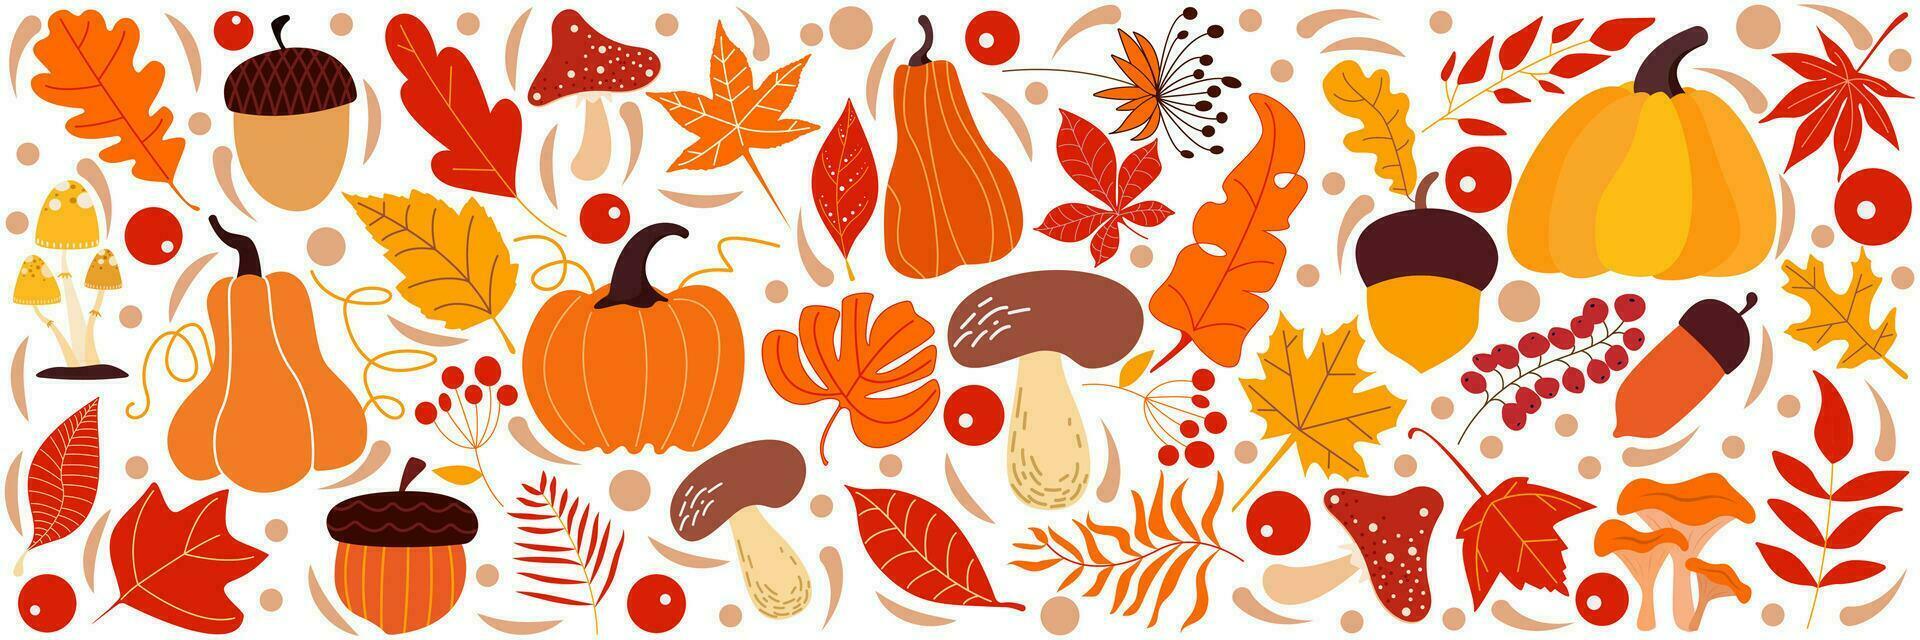 vistoso vector mano dibujado garabatear dibujos animados conjunto de objetos y símbolos en el acción de gracias otoño tema.